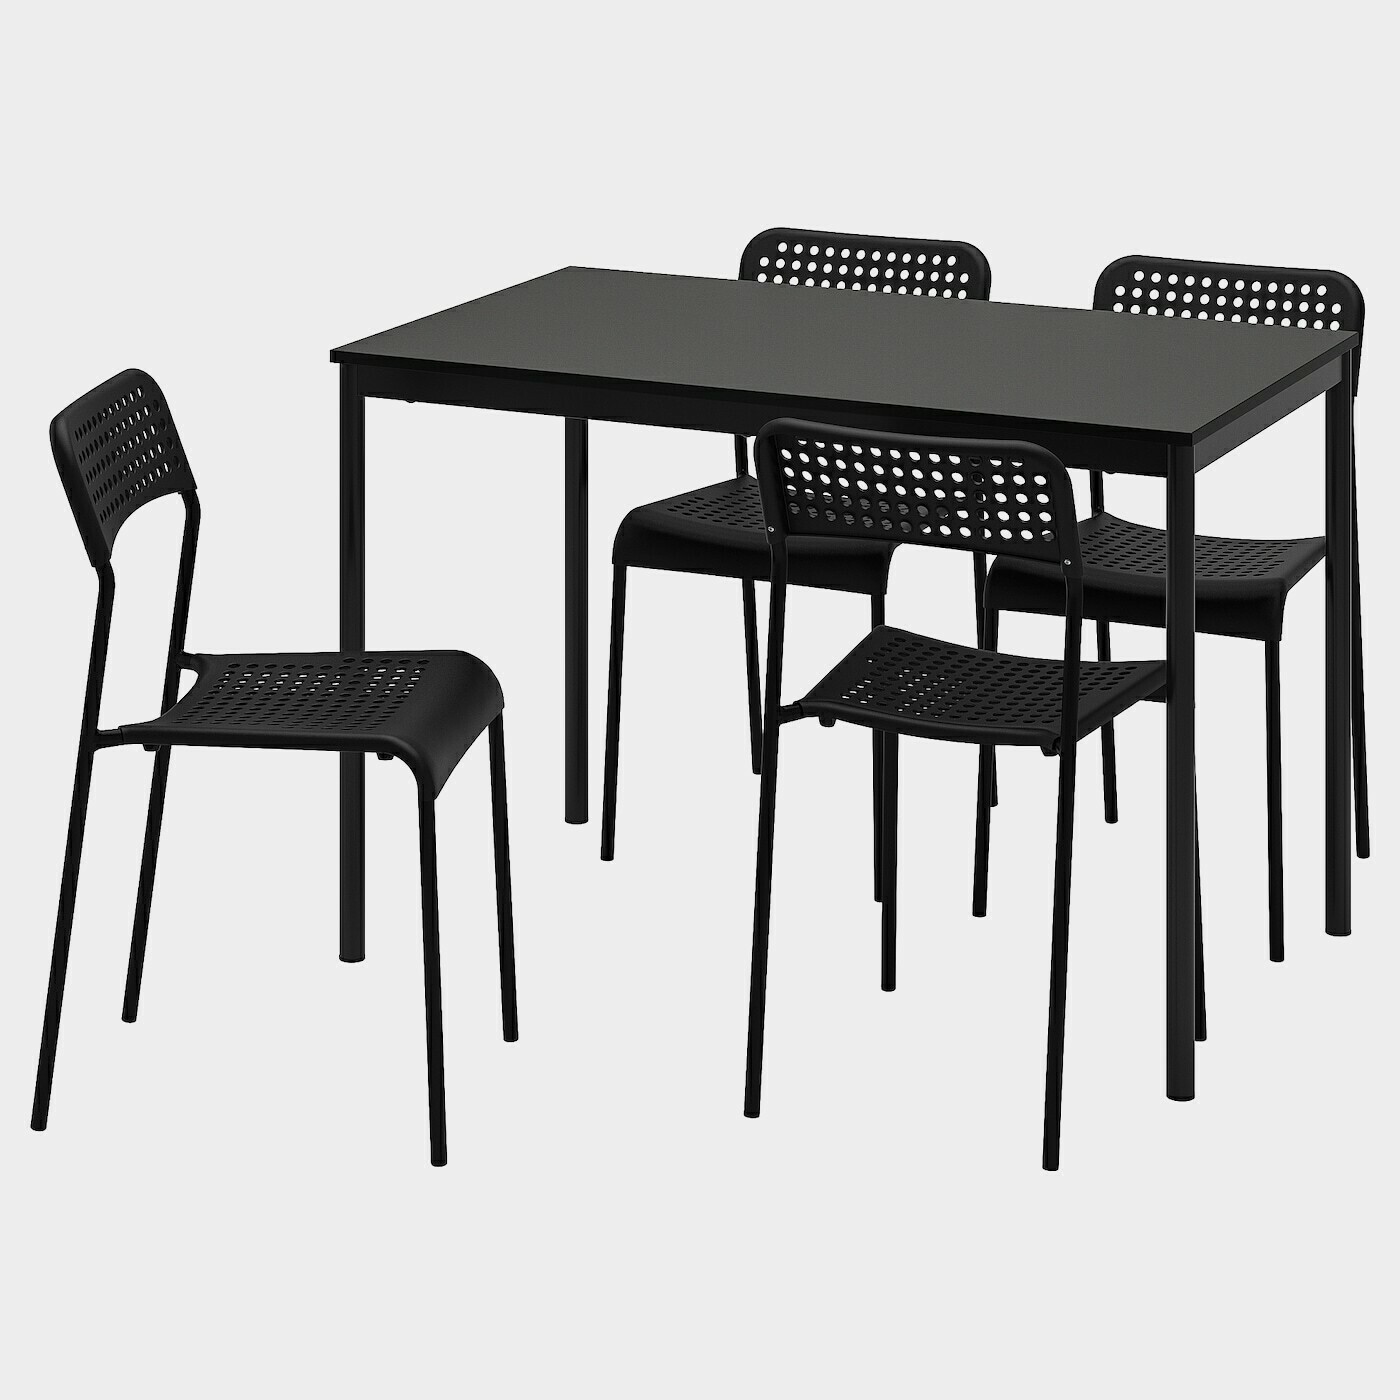 SANDSBERG / ADDE Tisch und 4 Stühle  -  - Möbel Ideen für dein Zuhause von Home Trends. Möbel Trends von Social Media Influencer für dein Skandi Zuhause.